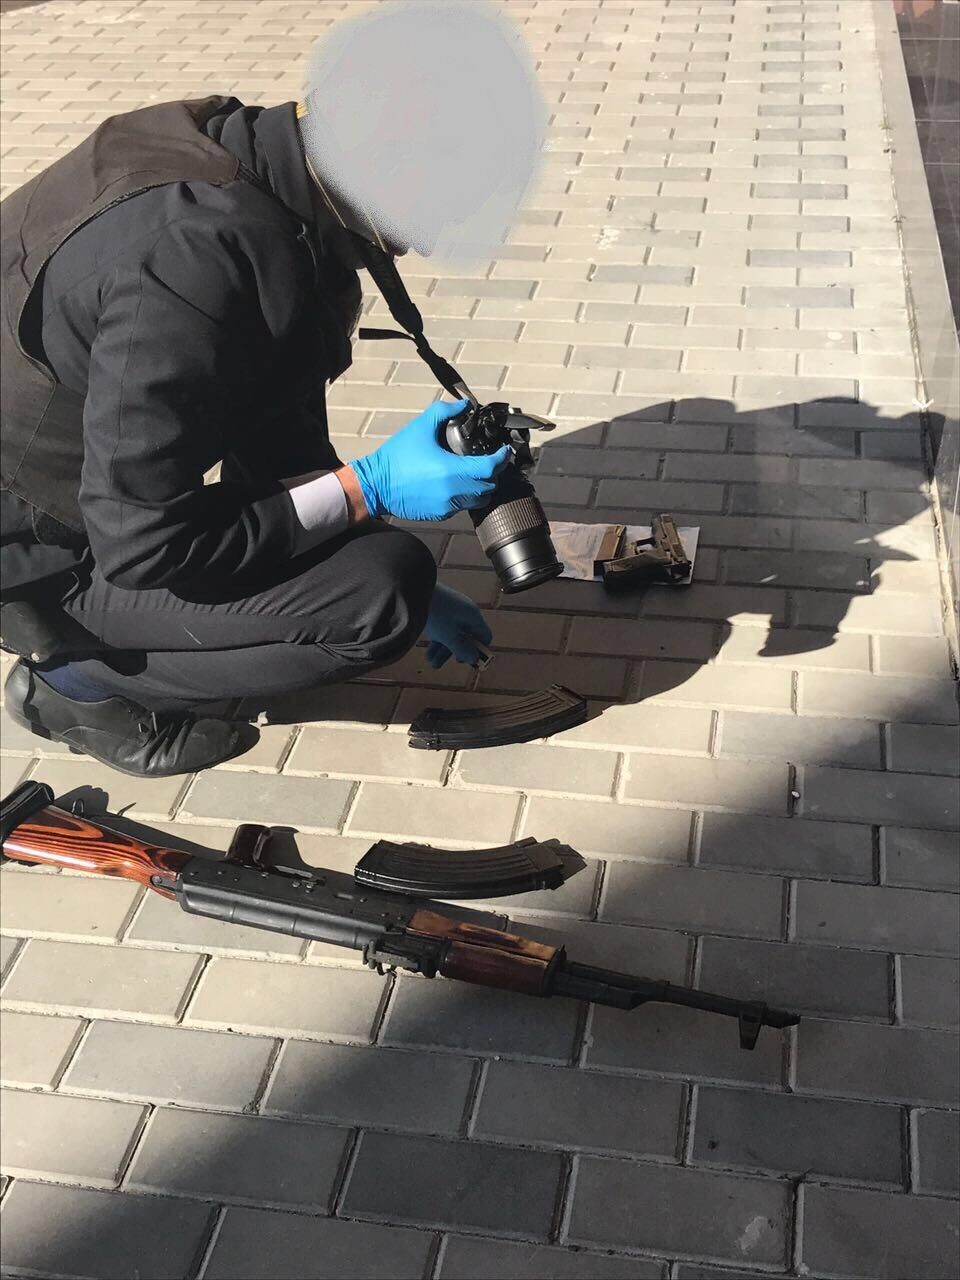 Янтарные войны: в Луцке двое "копателей" взяли в заложники полицейского